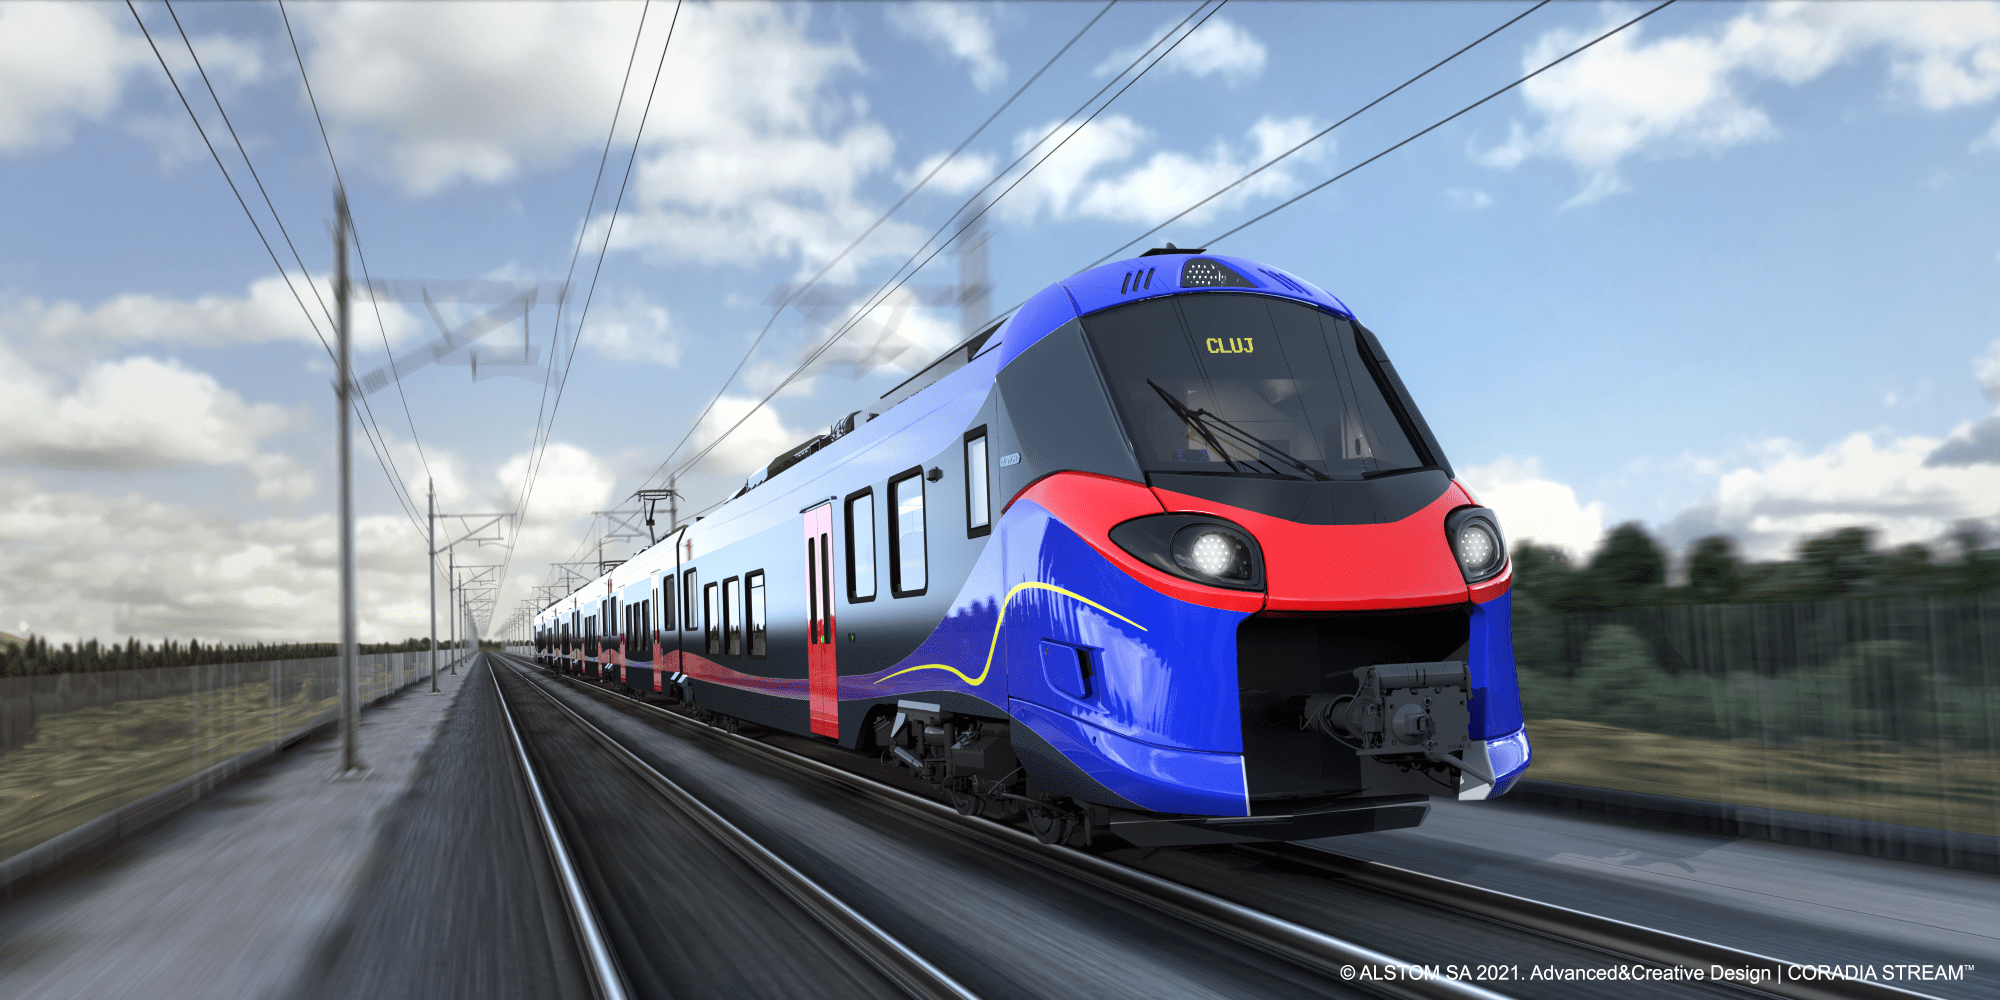  Vis de CFR de la Pașcani la Suceava: trenurile să circule cu 160 km/oră